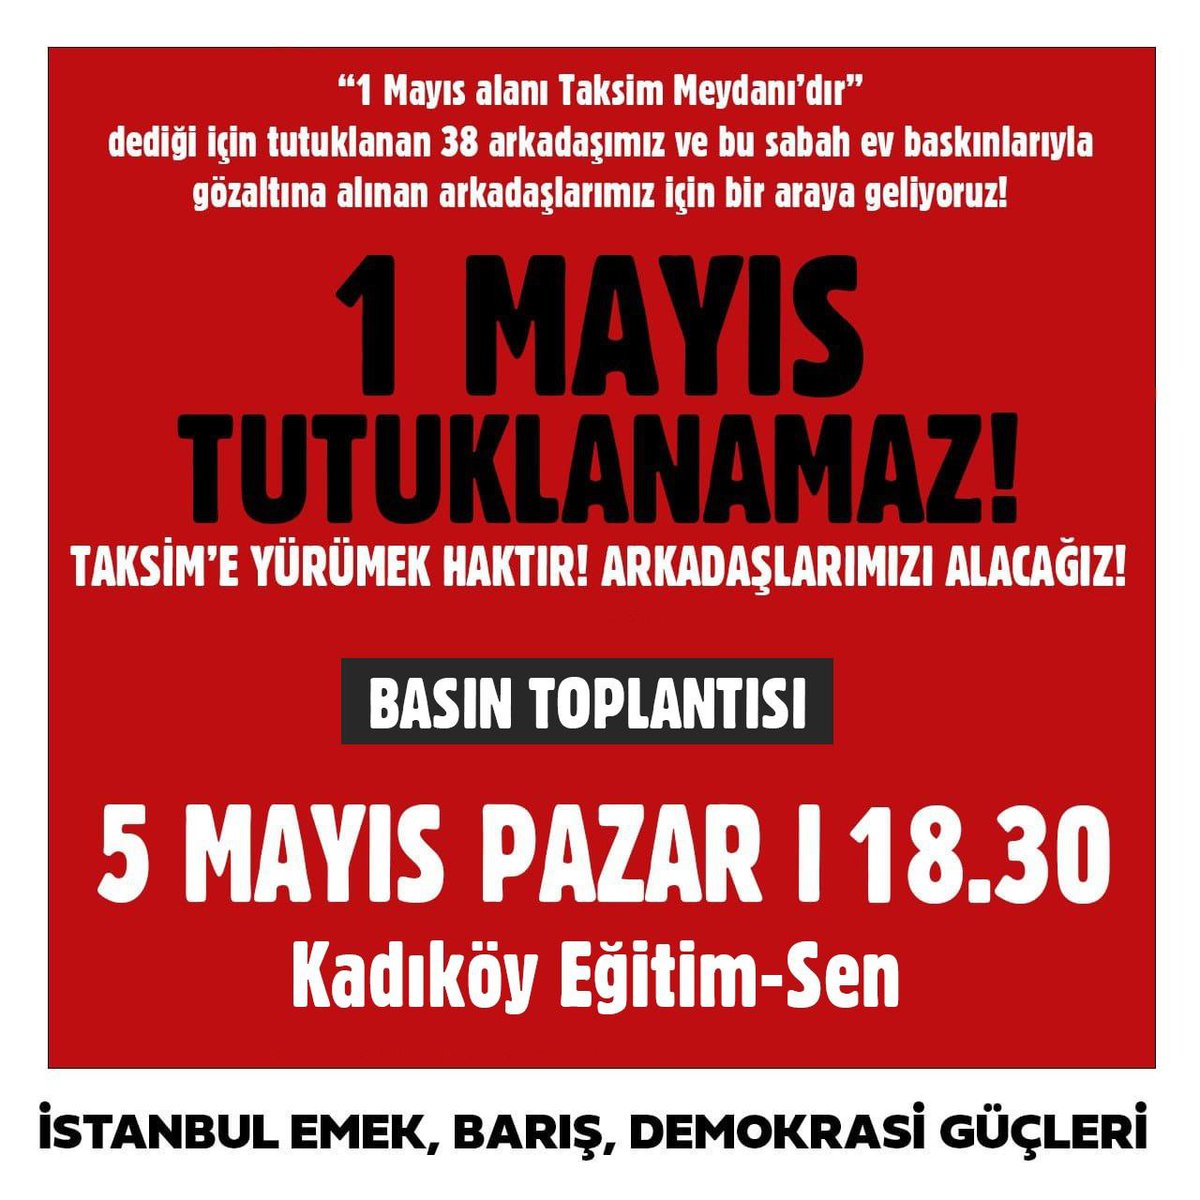 Taksim Meydanı 1 Mayıs alanıdır! Gözaltı ve tutuklamalara karşı Taksim iradesini sahiplenmek için bir araya geliyoruz.